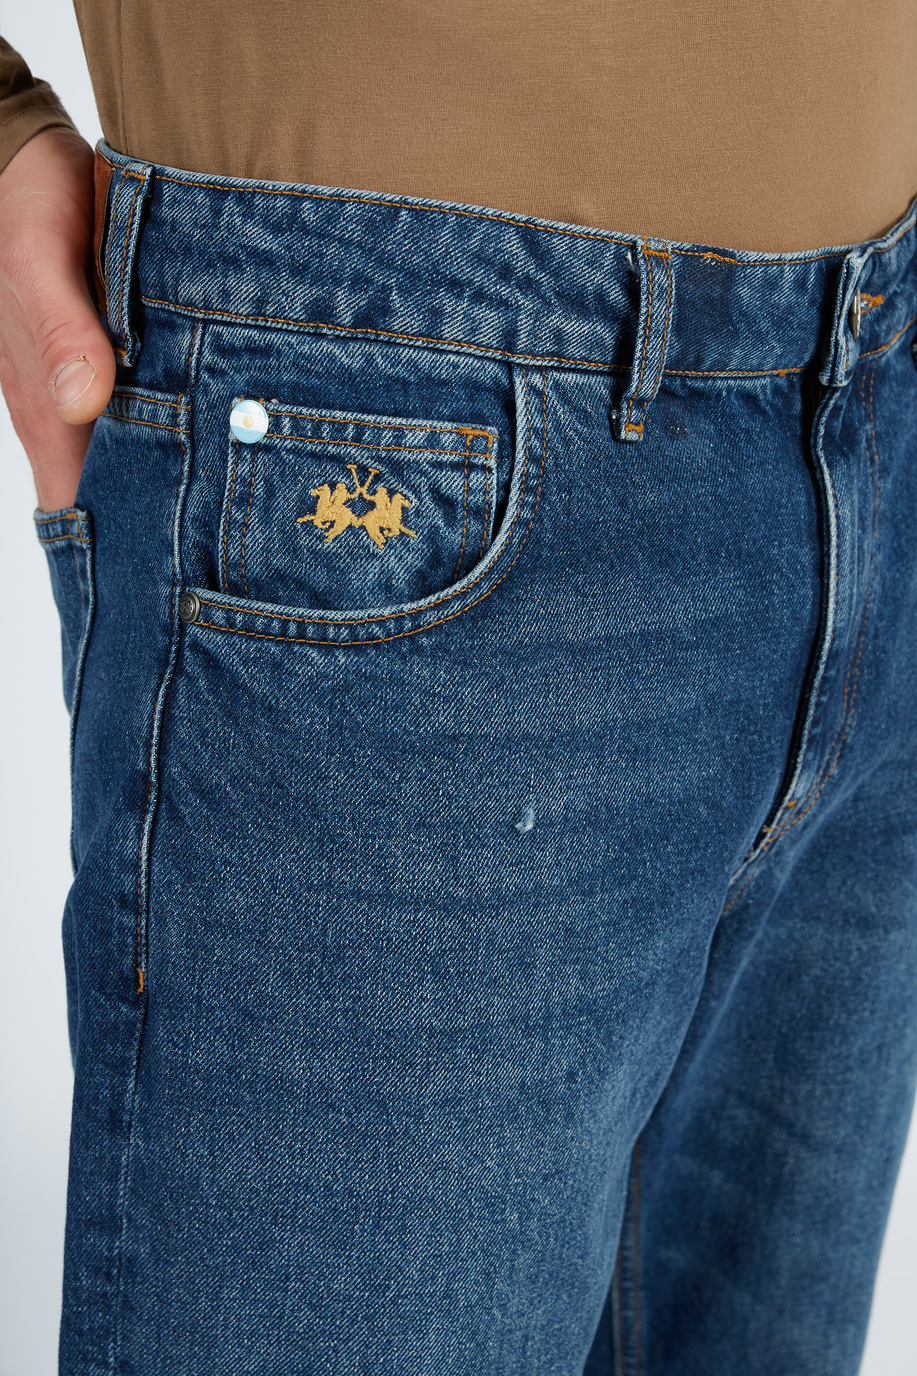 Pantalone da uomo modello 5 tasche in denim regular fit - Abbigliamento casual uomo | La Martina - Official Online Shop